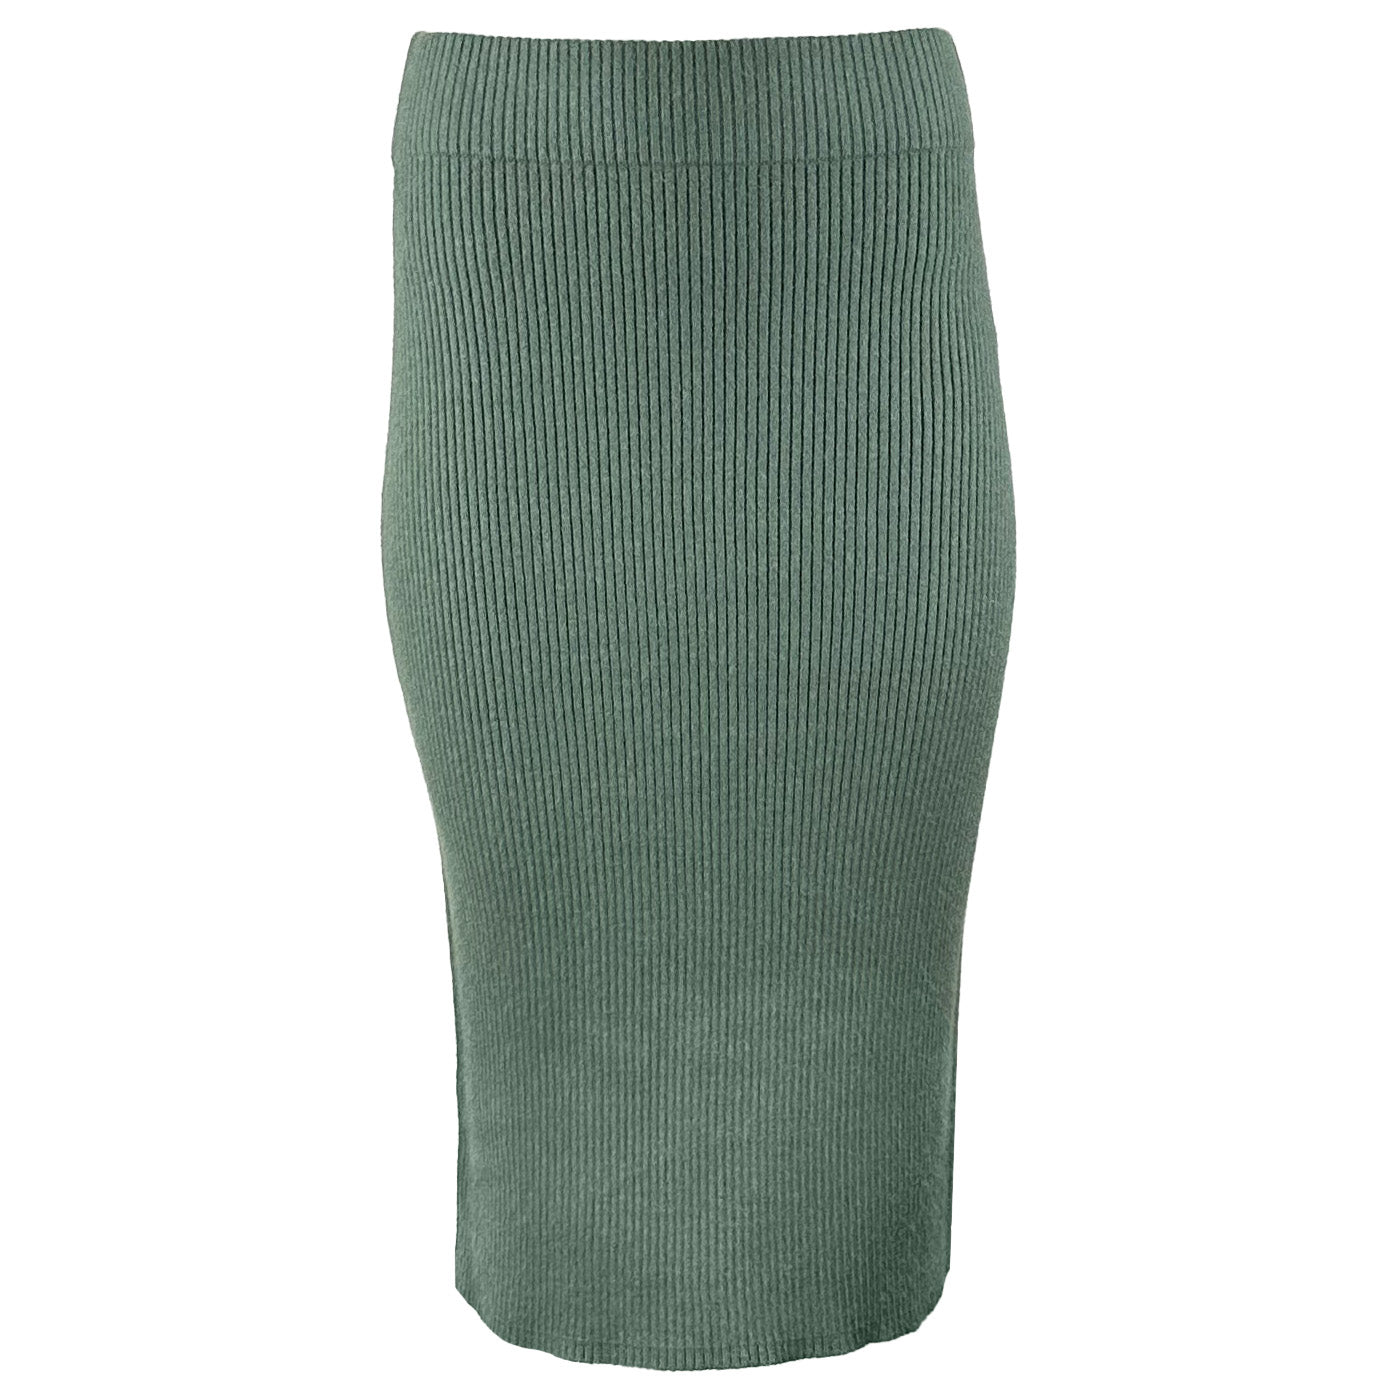 Дамска плетена пола VILA, в зелен цвят, оребрена, размер М.